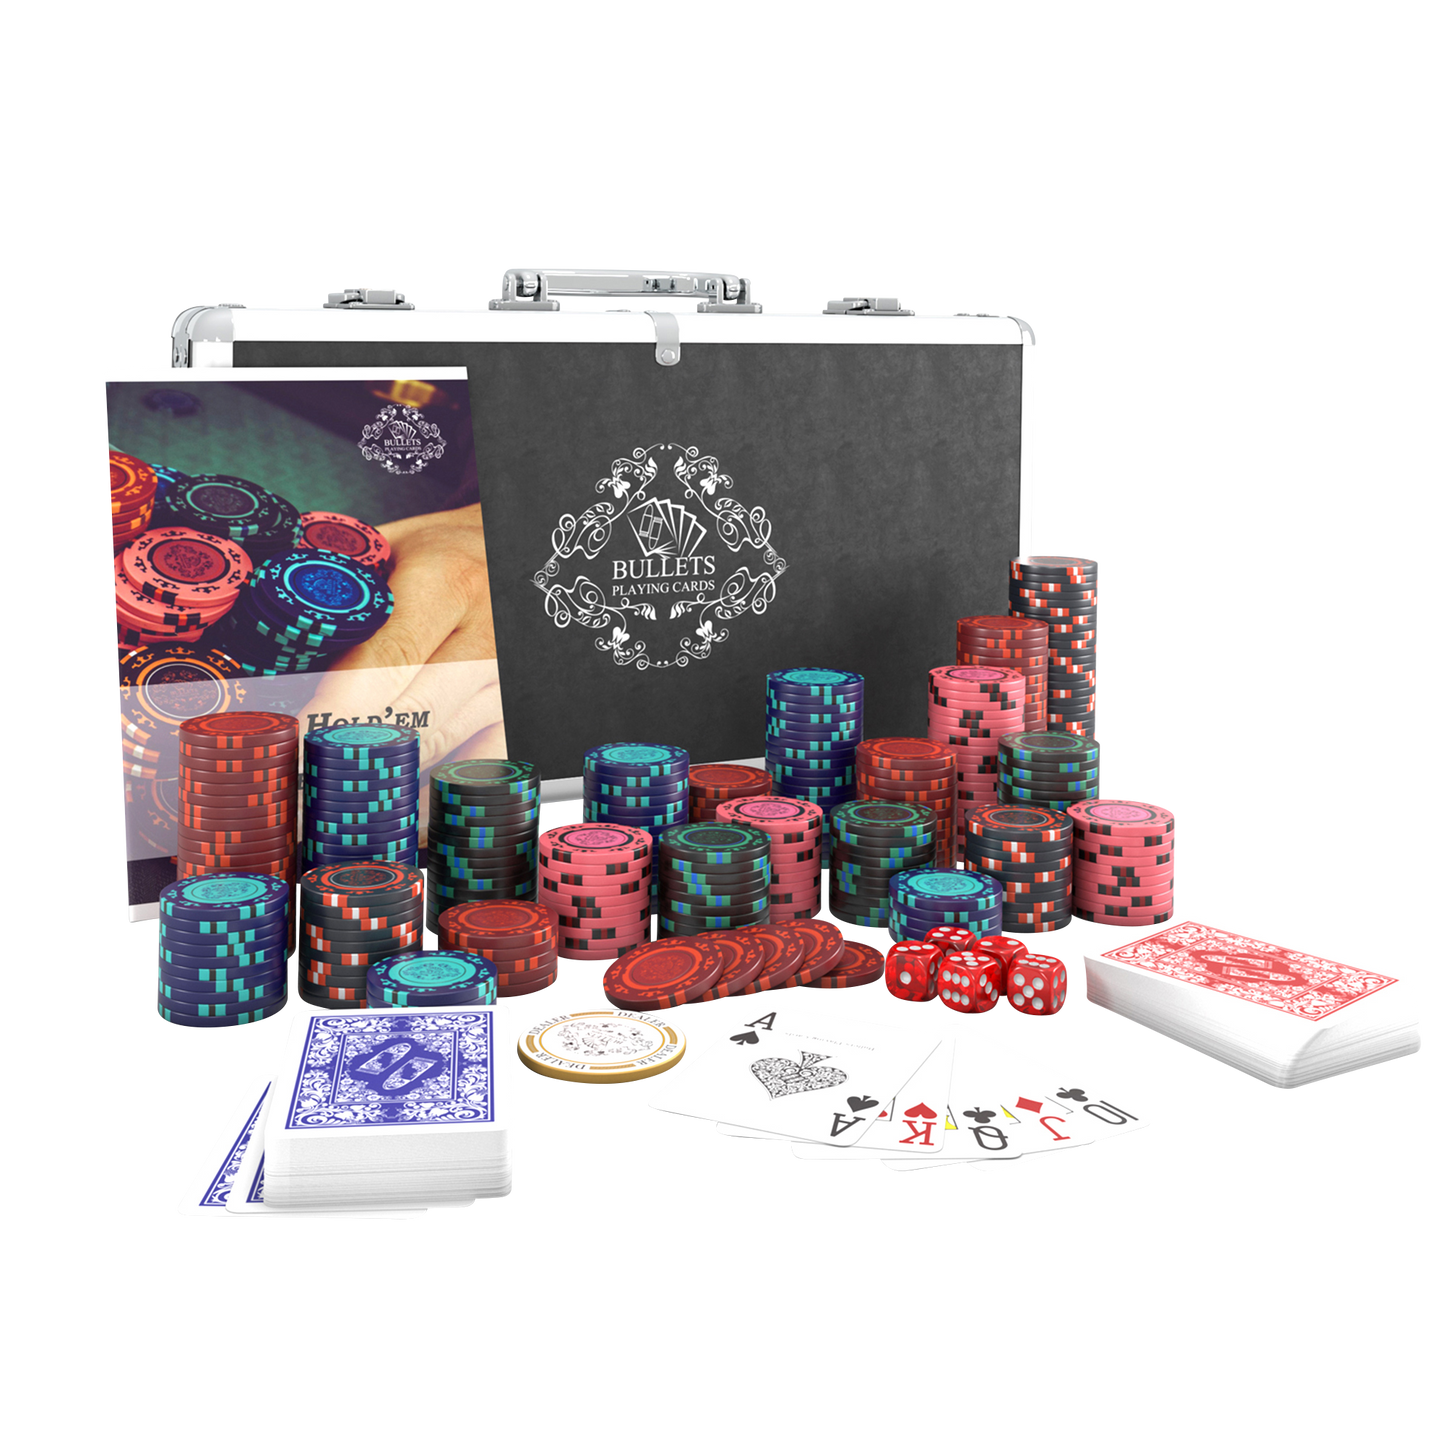 Pokerkoffer mit 300 Clay Pokerchips "Corrado" ohne Werte